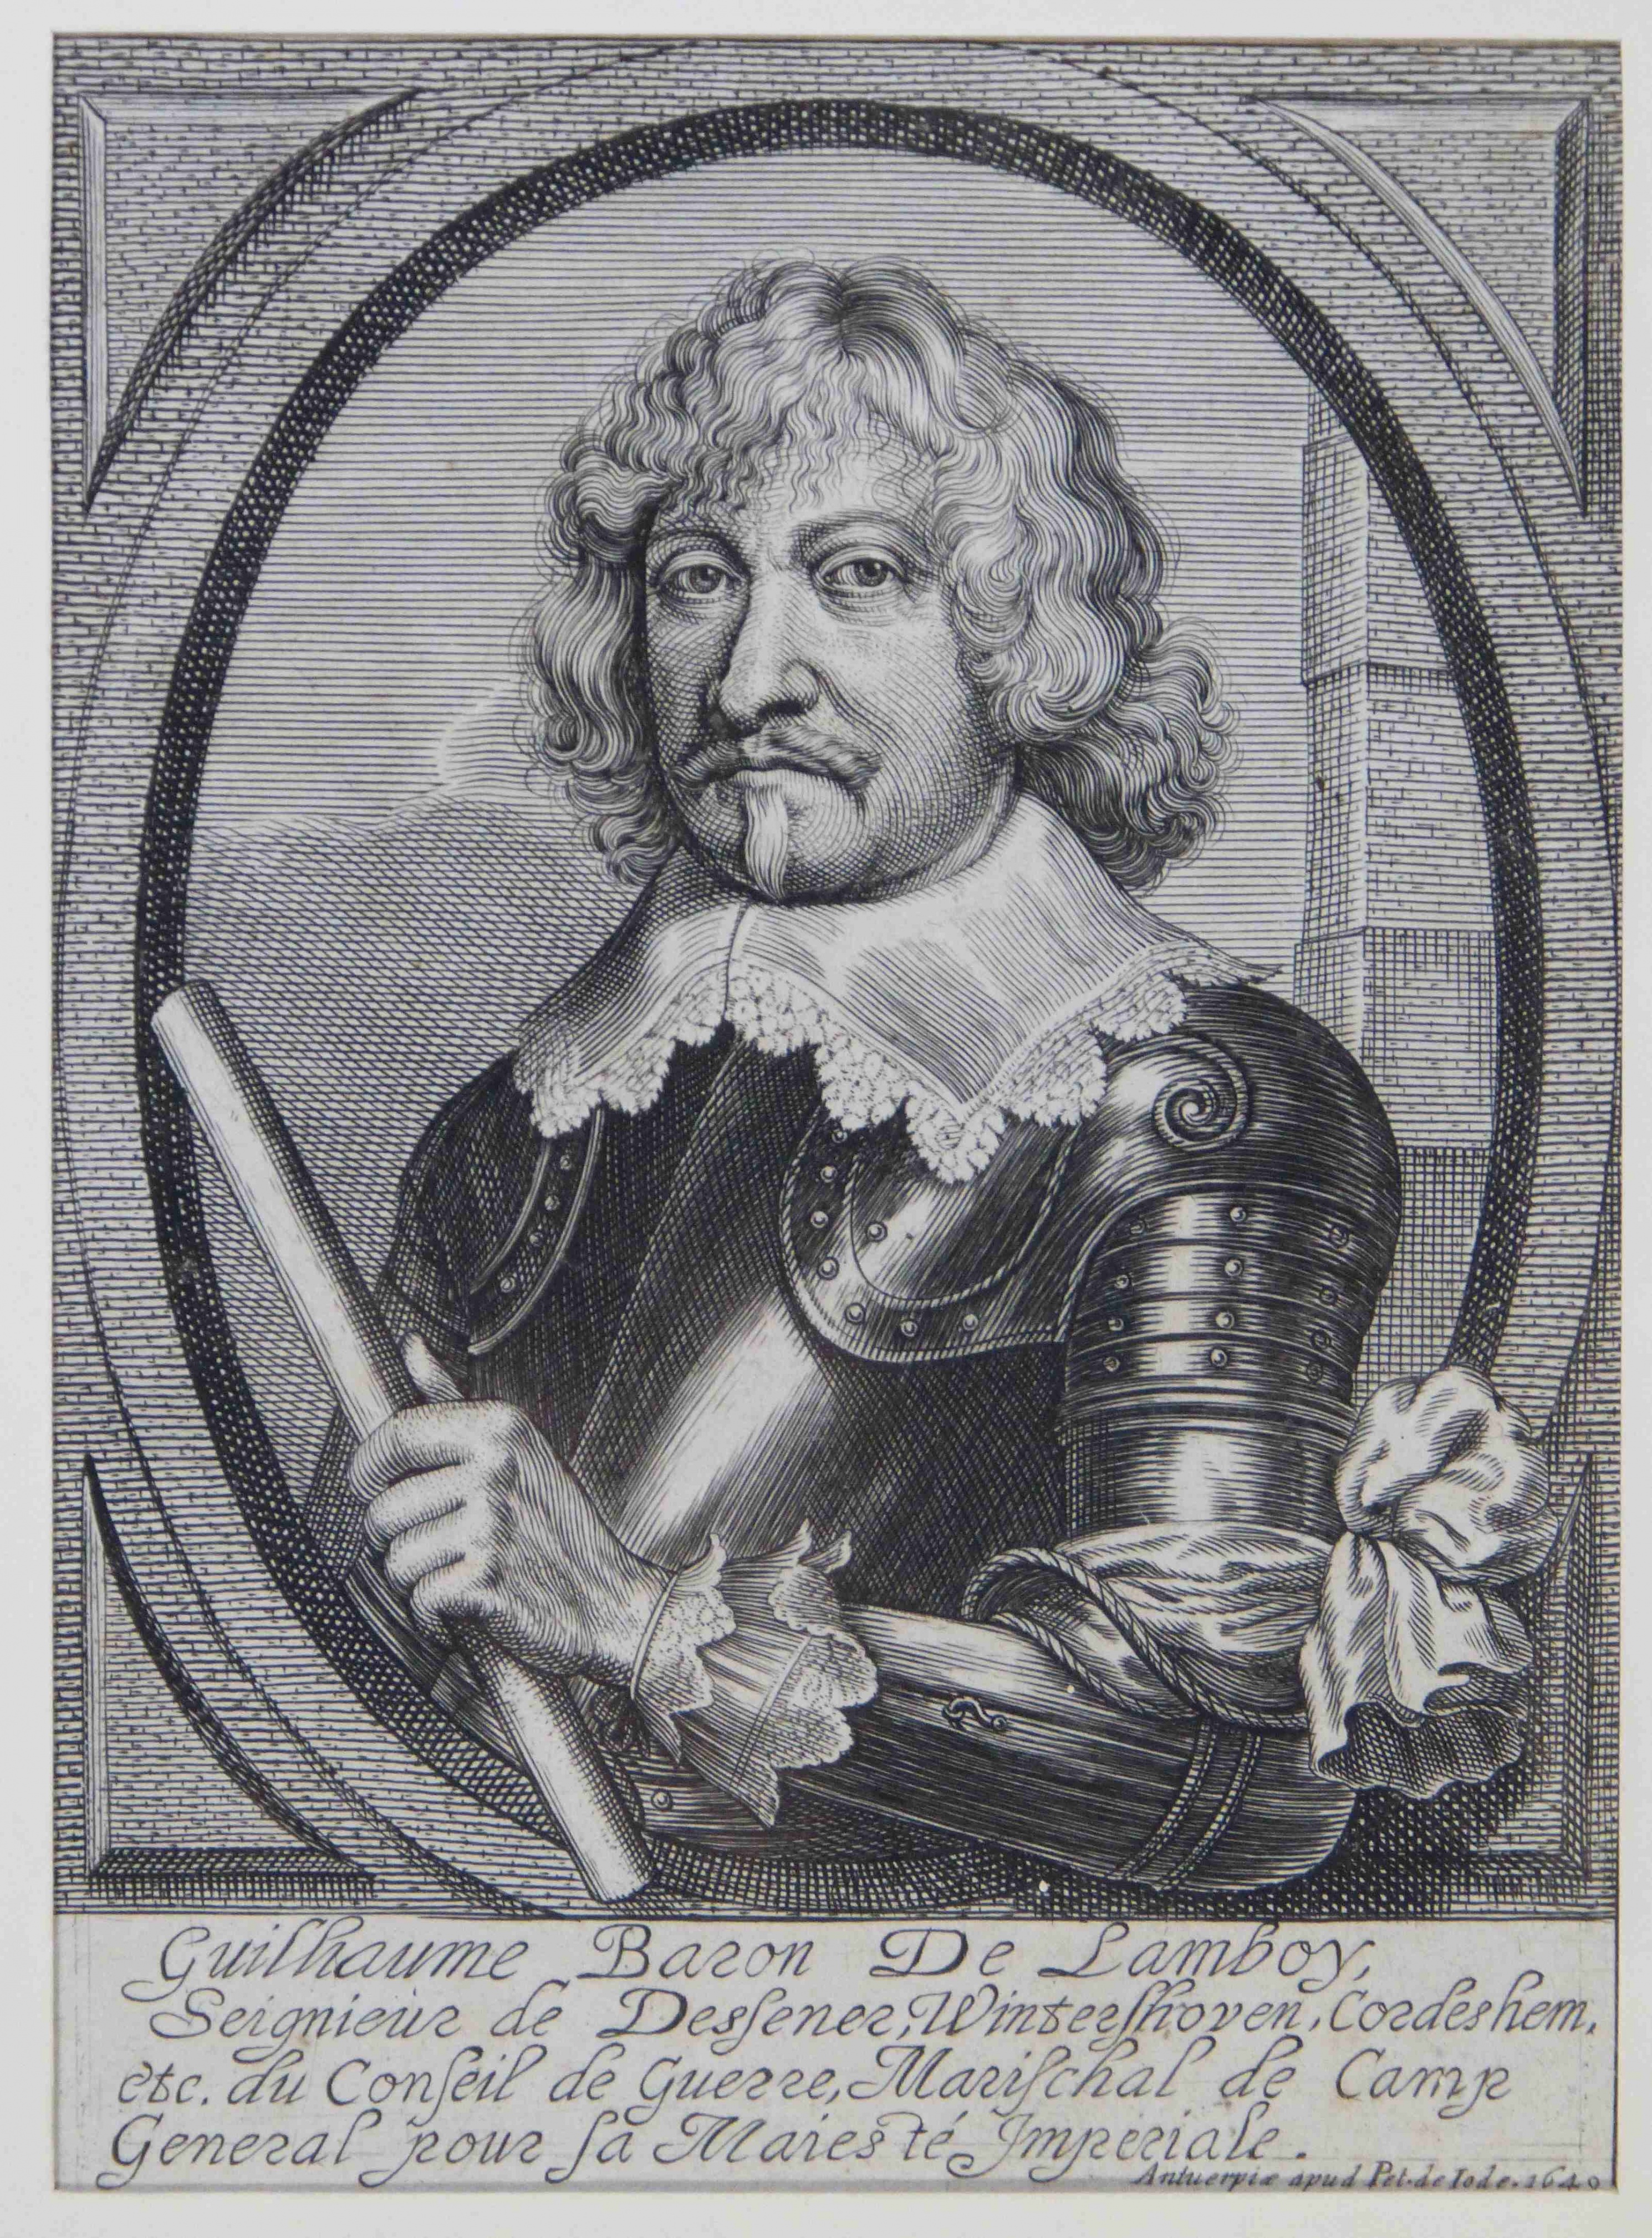 Kupferstich: Guillaume de Lamboy (Städt. Hellweg-Museum Geseke CC BY-NC-SA)